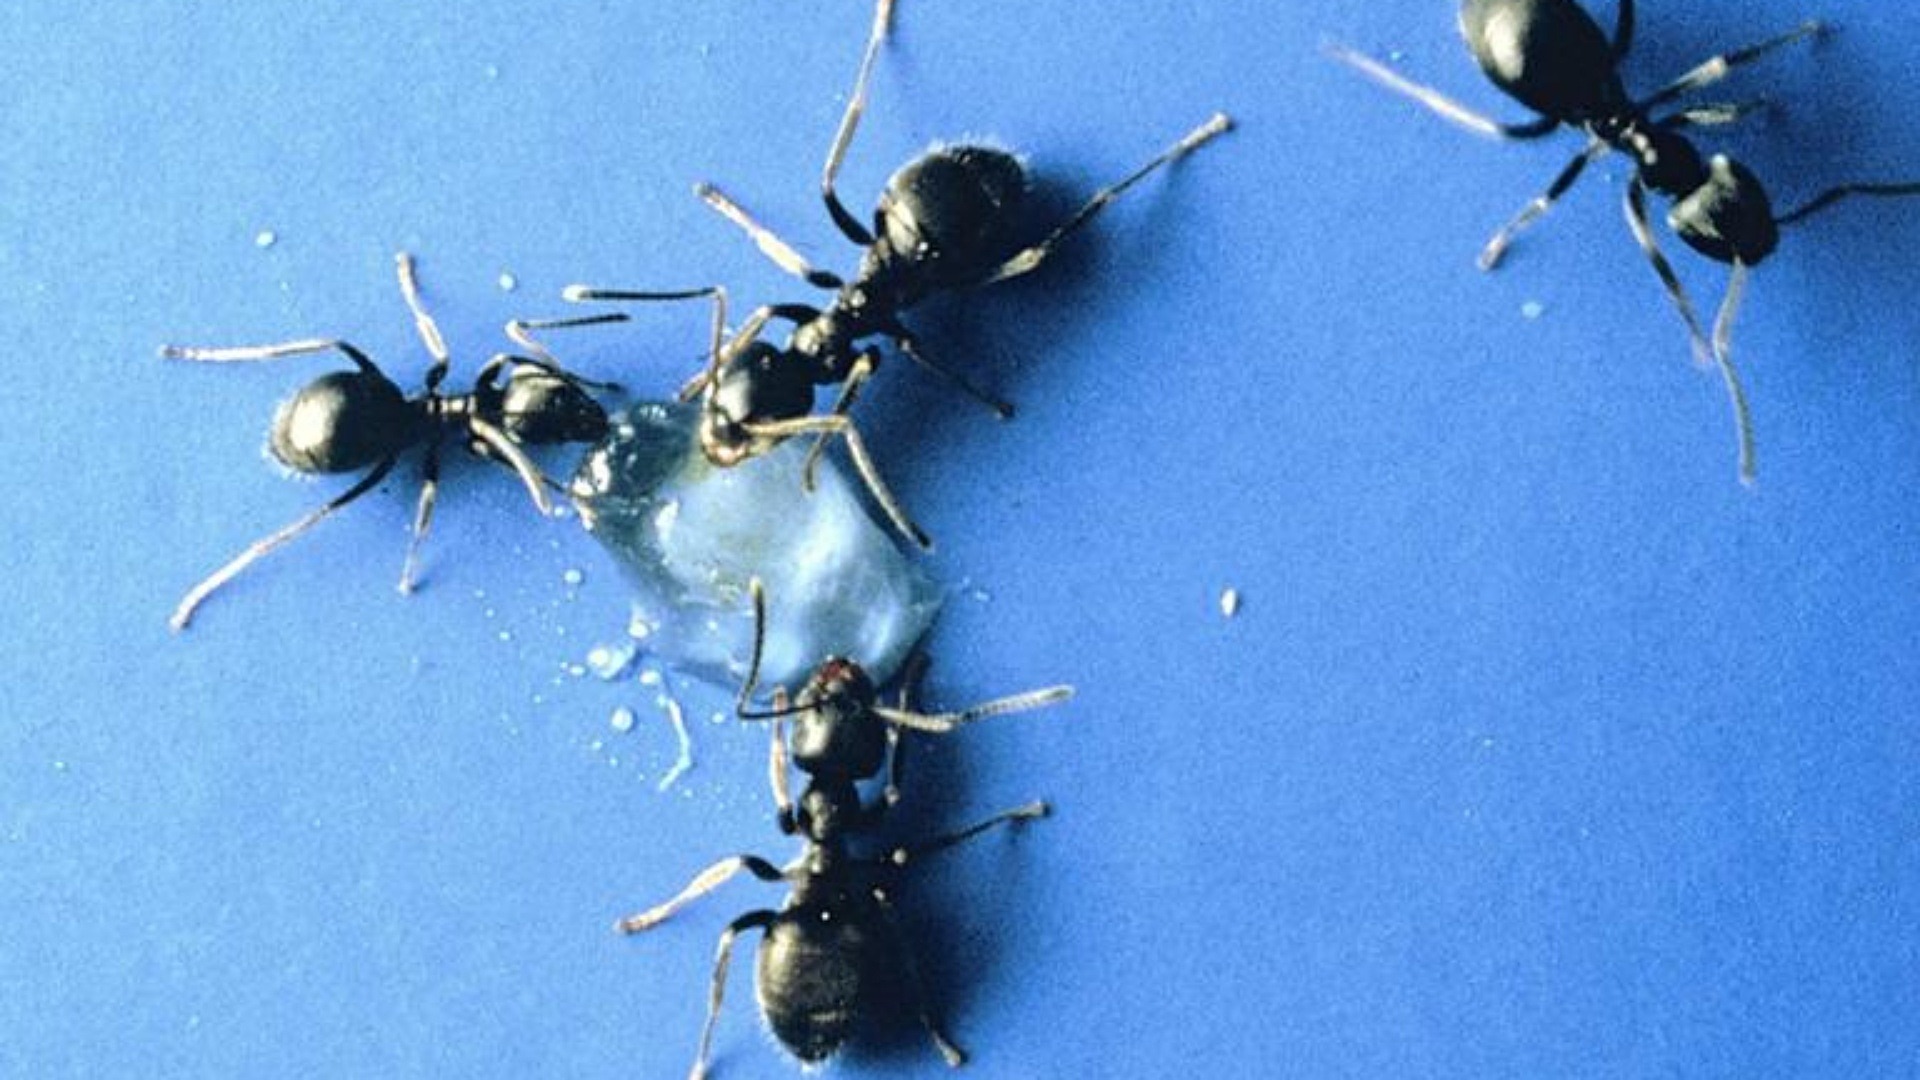 Närbild på svartmyror på blå yta.